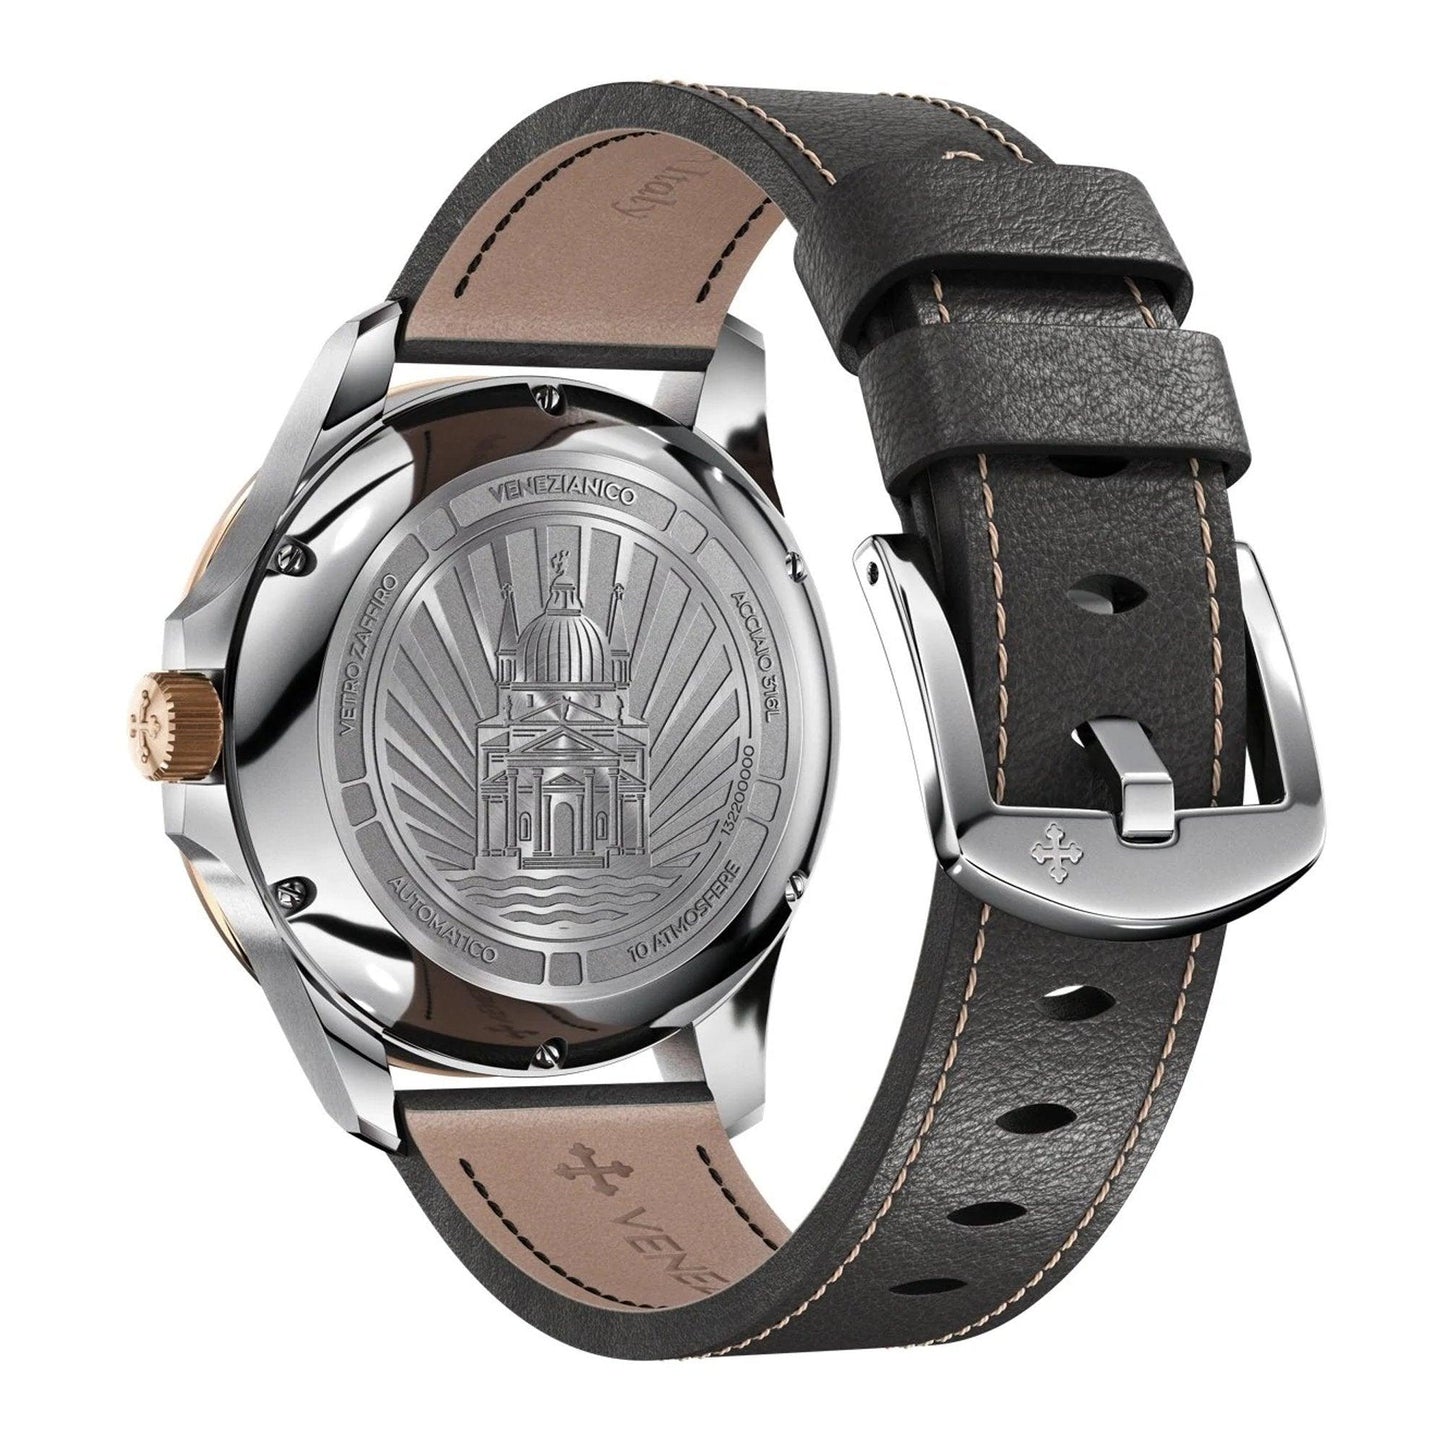 Venezianico Redentore 1321505 orologio uomo meccanico - Kechiq Concept Boutique